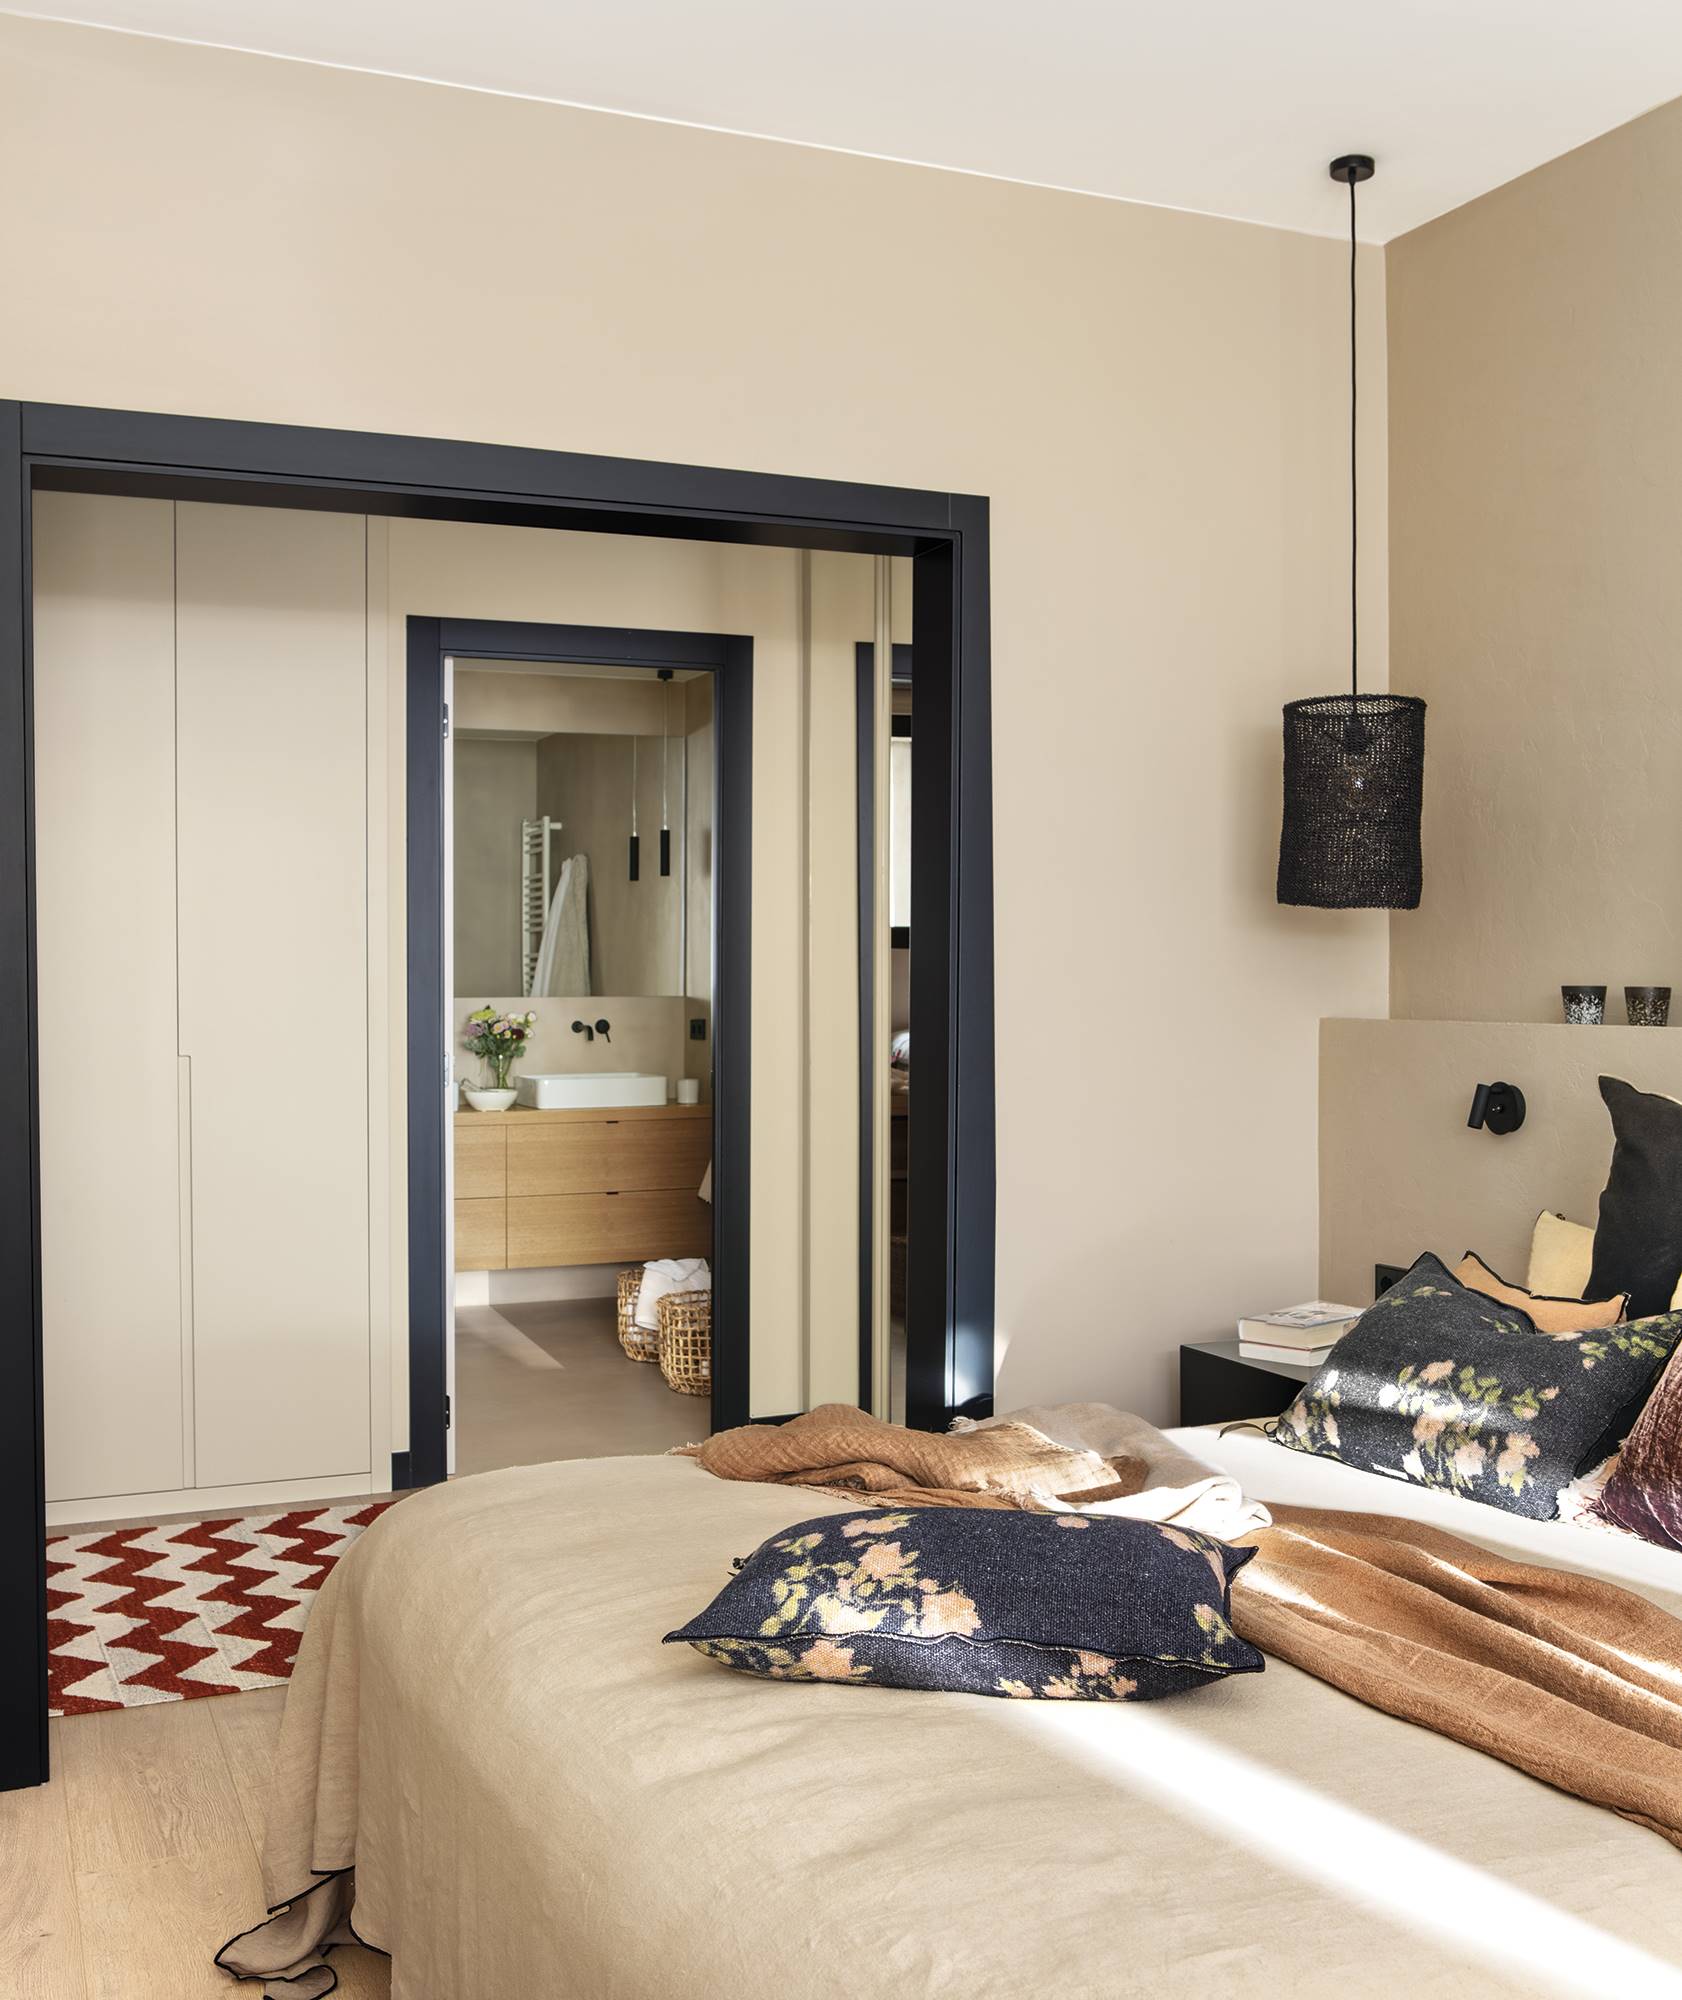 Dormitorio beige con carpintería negra y acceso al vestidor y el baño. 